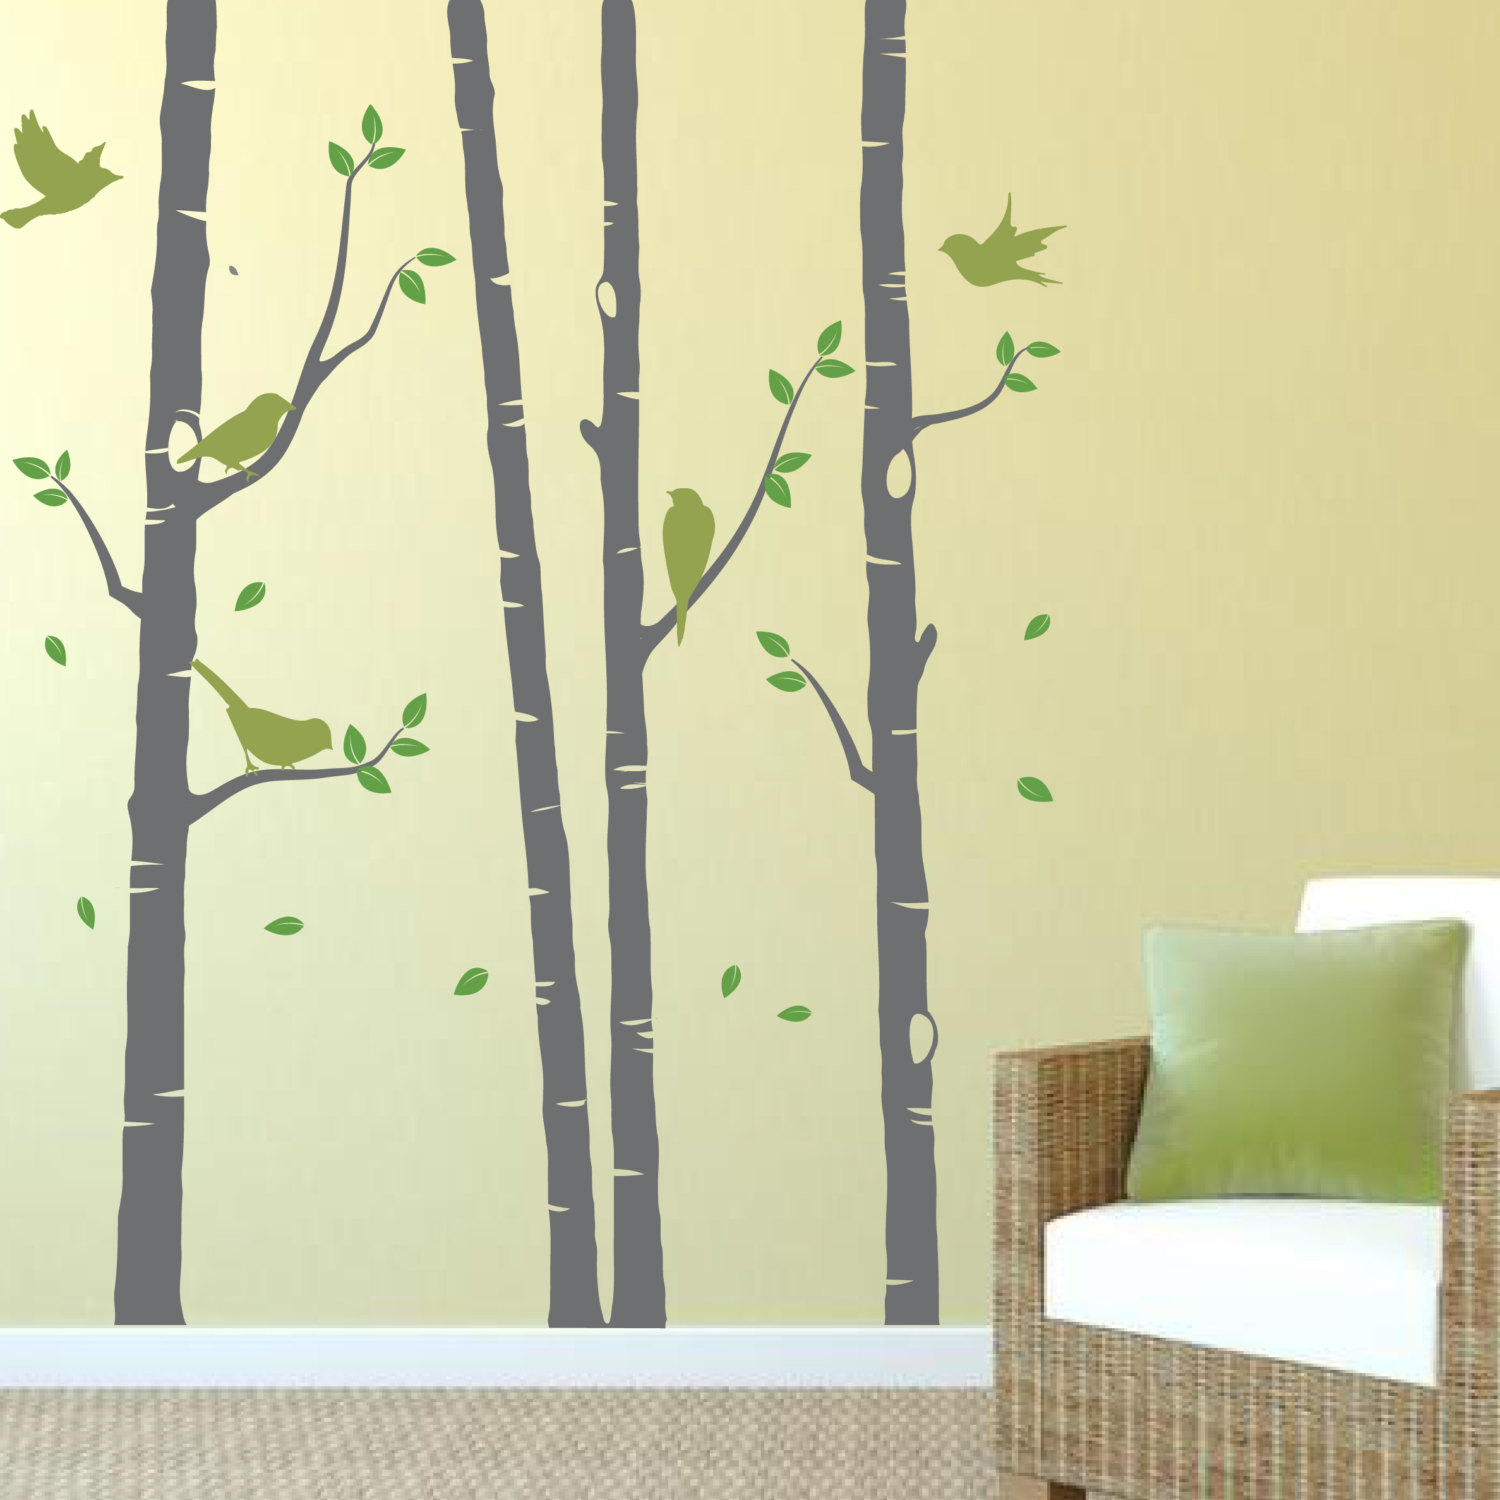 4 birch tree wall stickers with birds